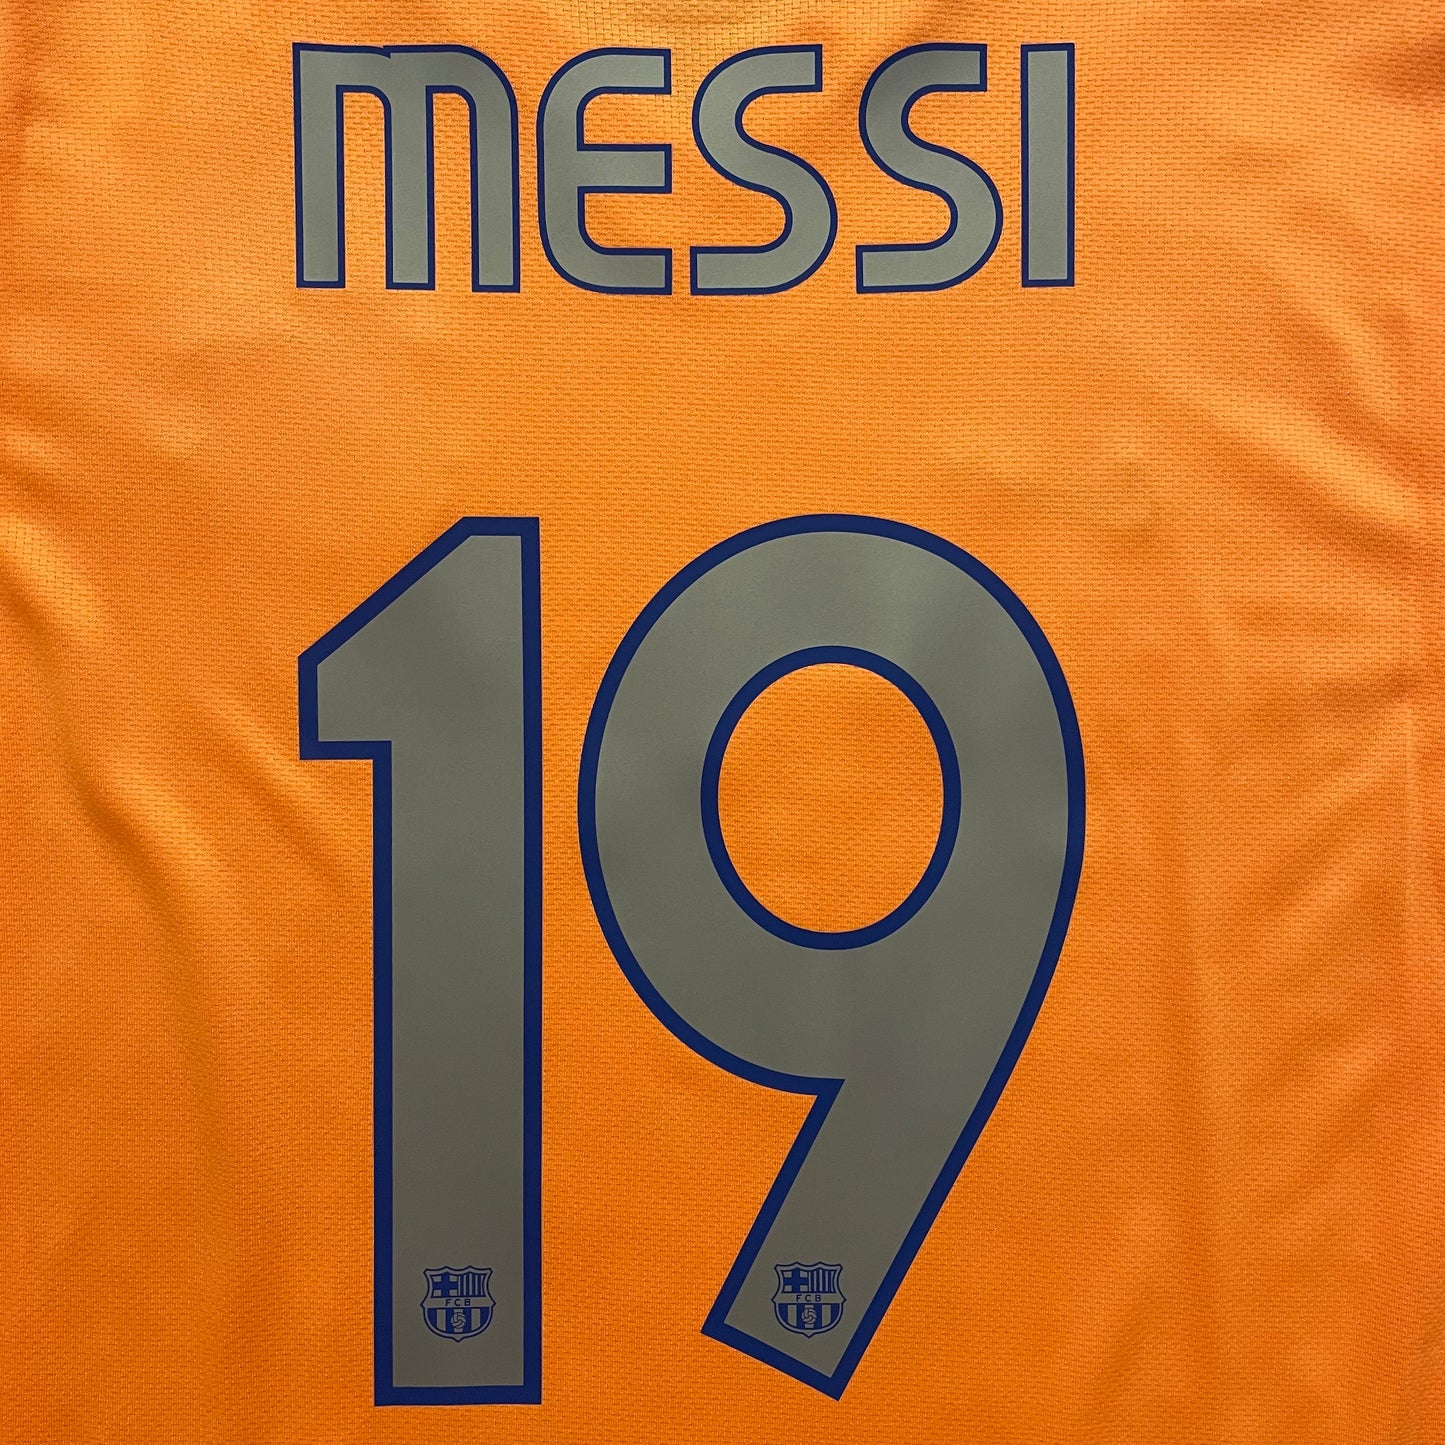 <tc>2006-2007 FC Barcelona camiseta visitante #19 Messi (L)</tc>